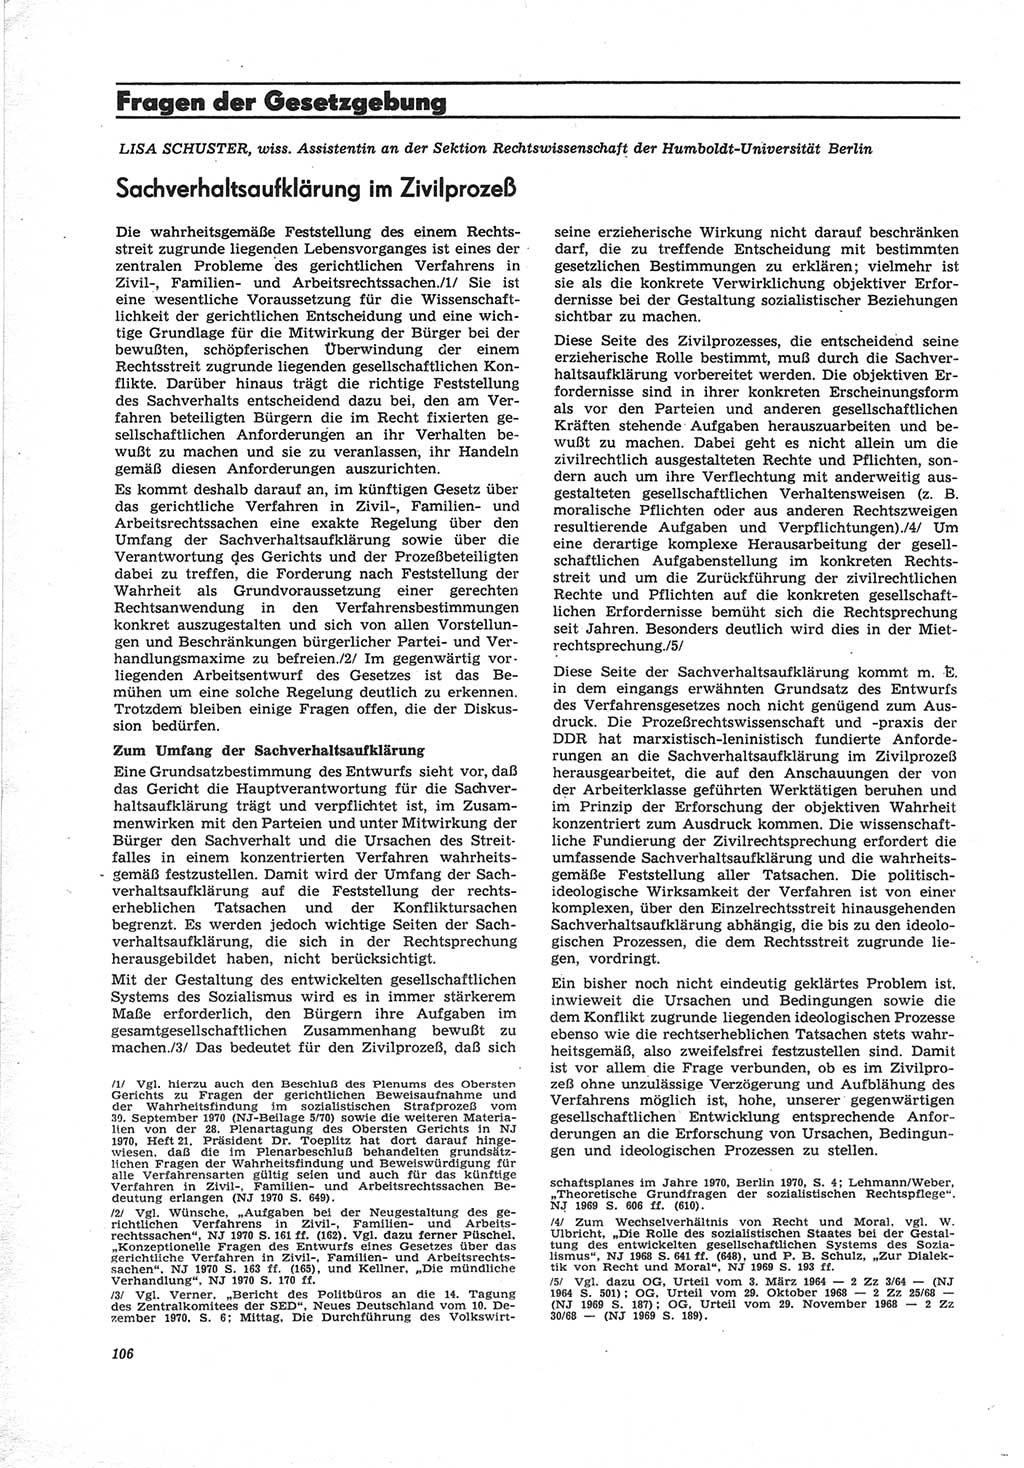 Neue Justiz (NJ), Zeitschrift für Recht und Rechtswissenschaft [Deutsche Demokratische Republik (DDR)], 25. Jahrgang 1971, Seite 106 (NJ DDR 1971, S. 106)